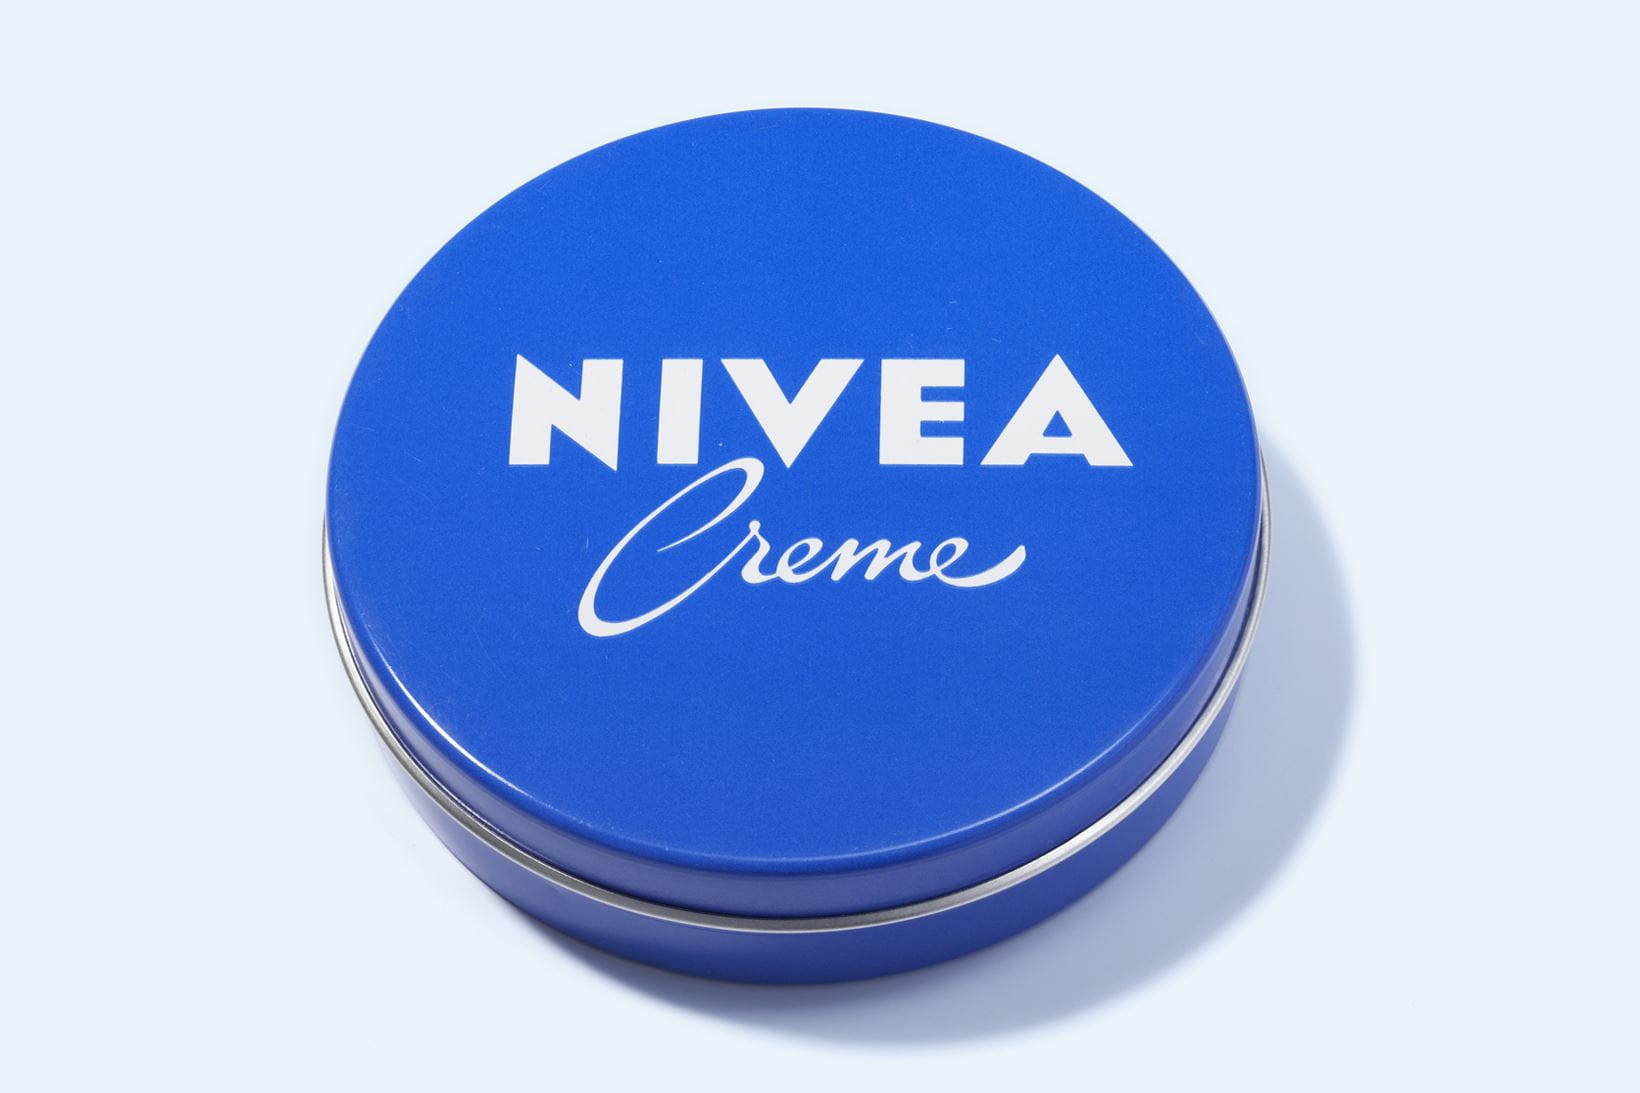 La crème NIVEA en 1970